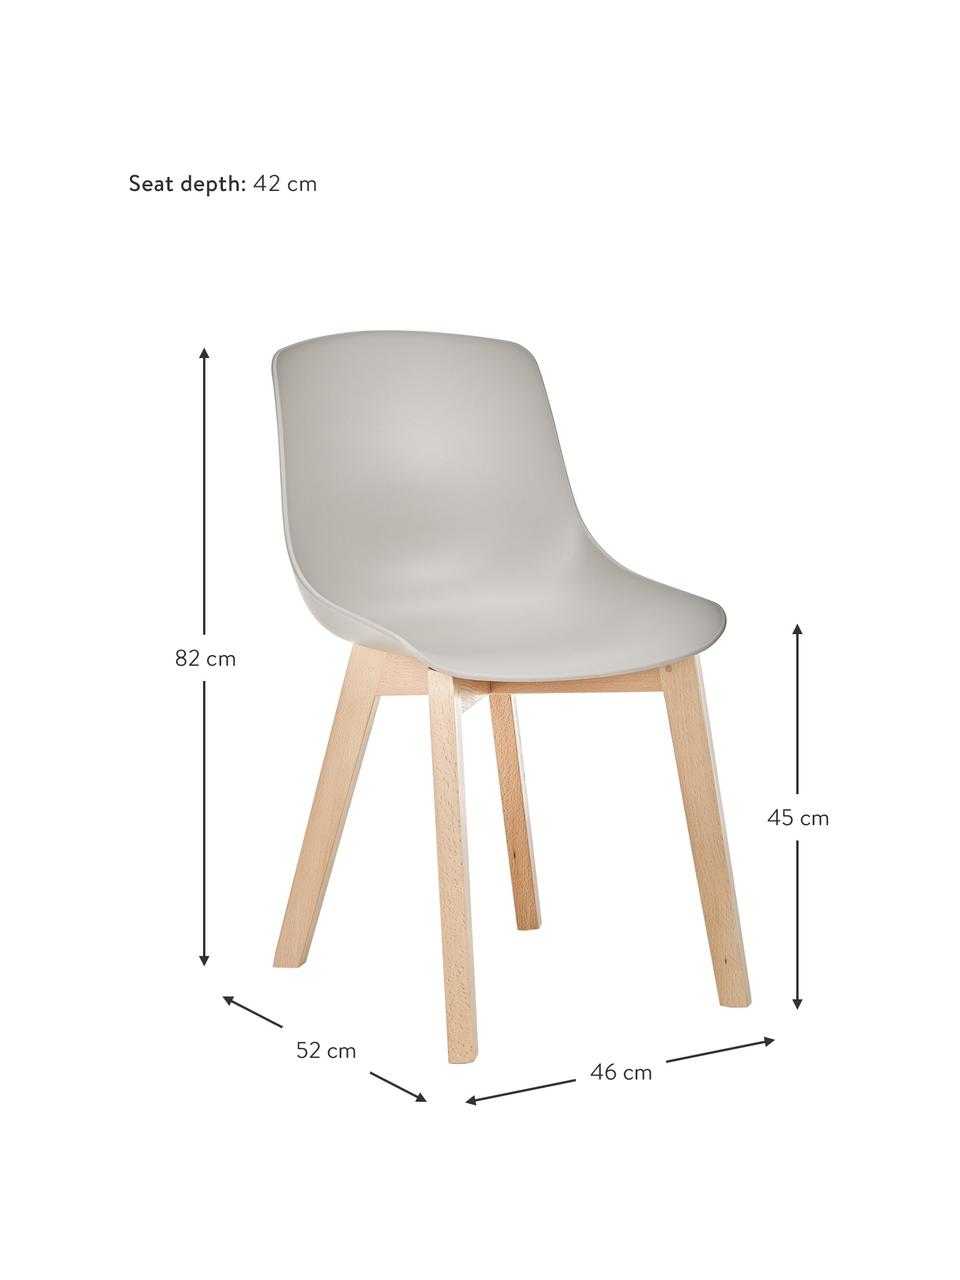 Kunststoffstühle Dave mit Holzbeinen, 2 Stück, Sitzschale: Kunststoff, Beine: Buchenholz, Beigegrau, B 46 x T 52 cm